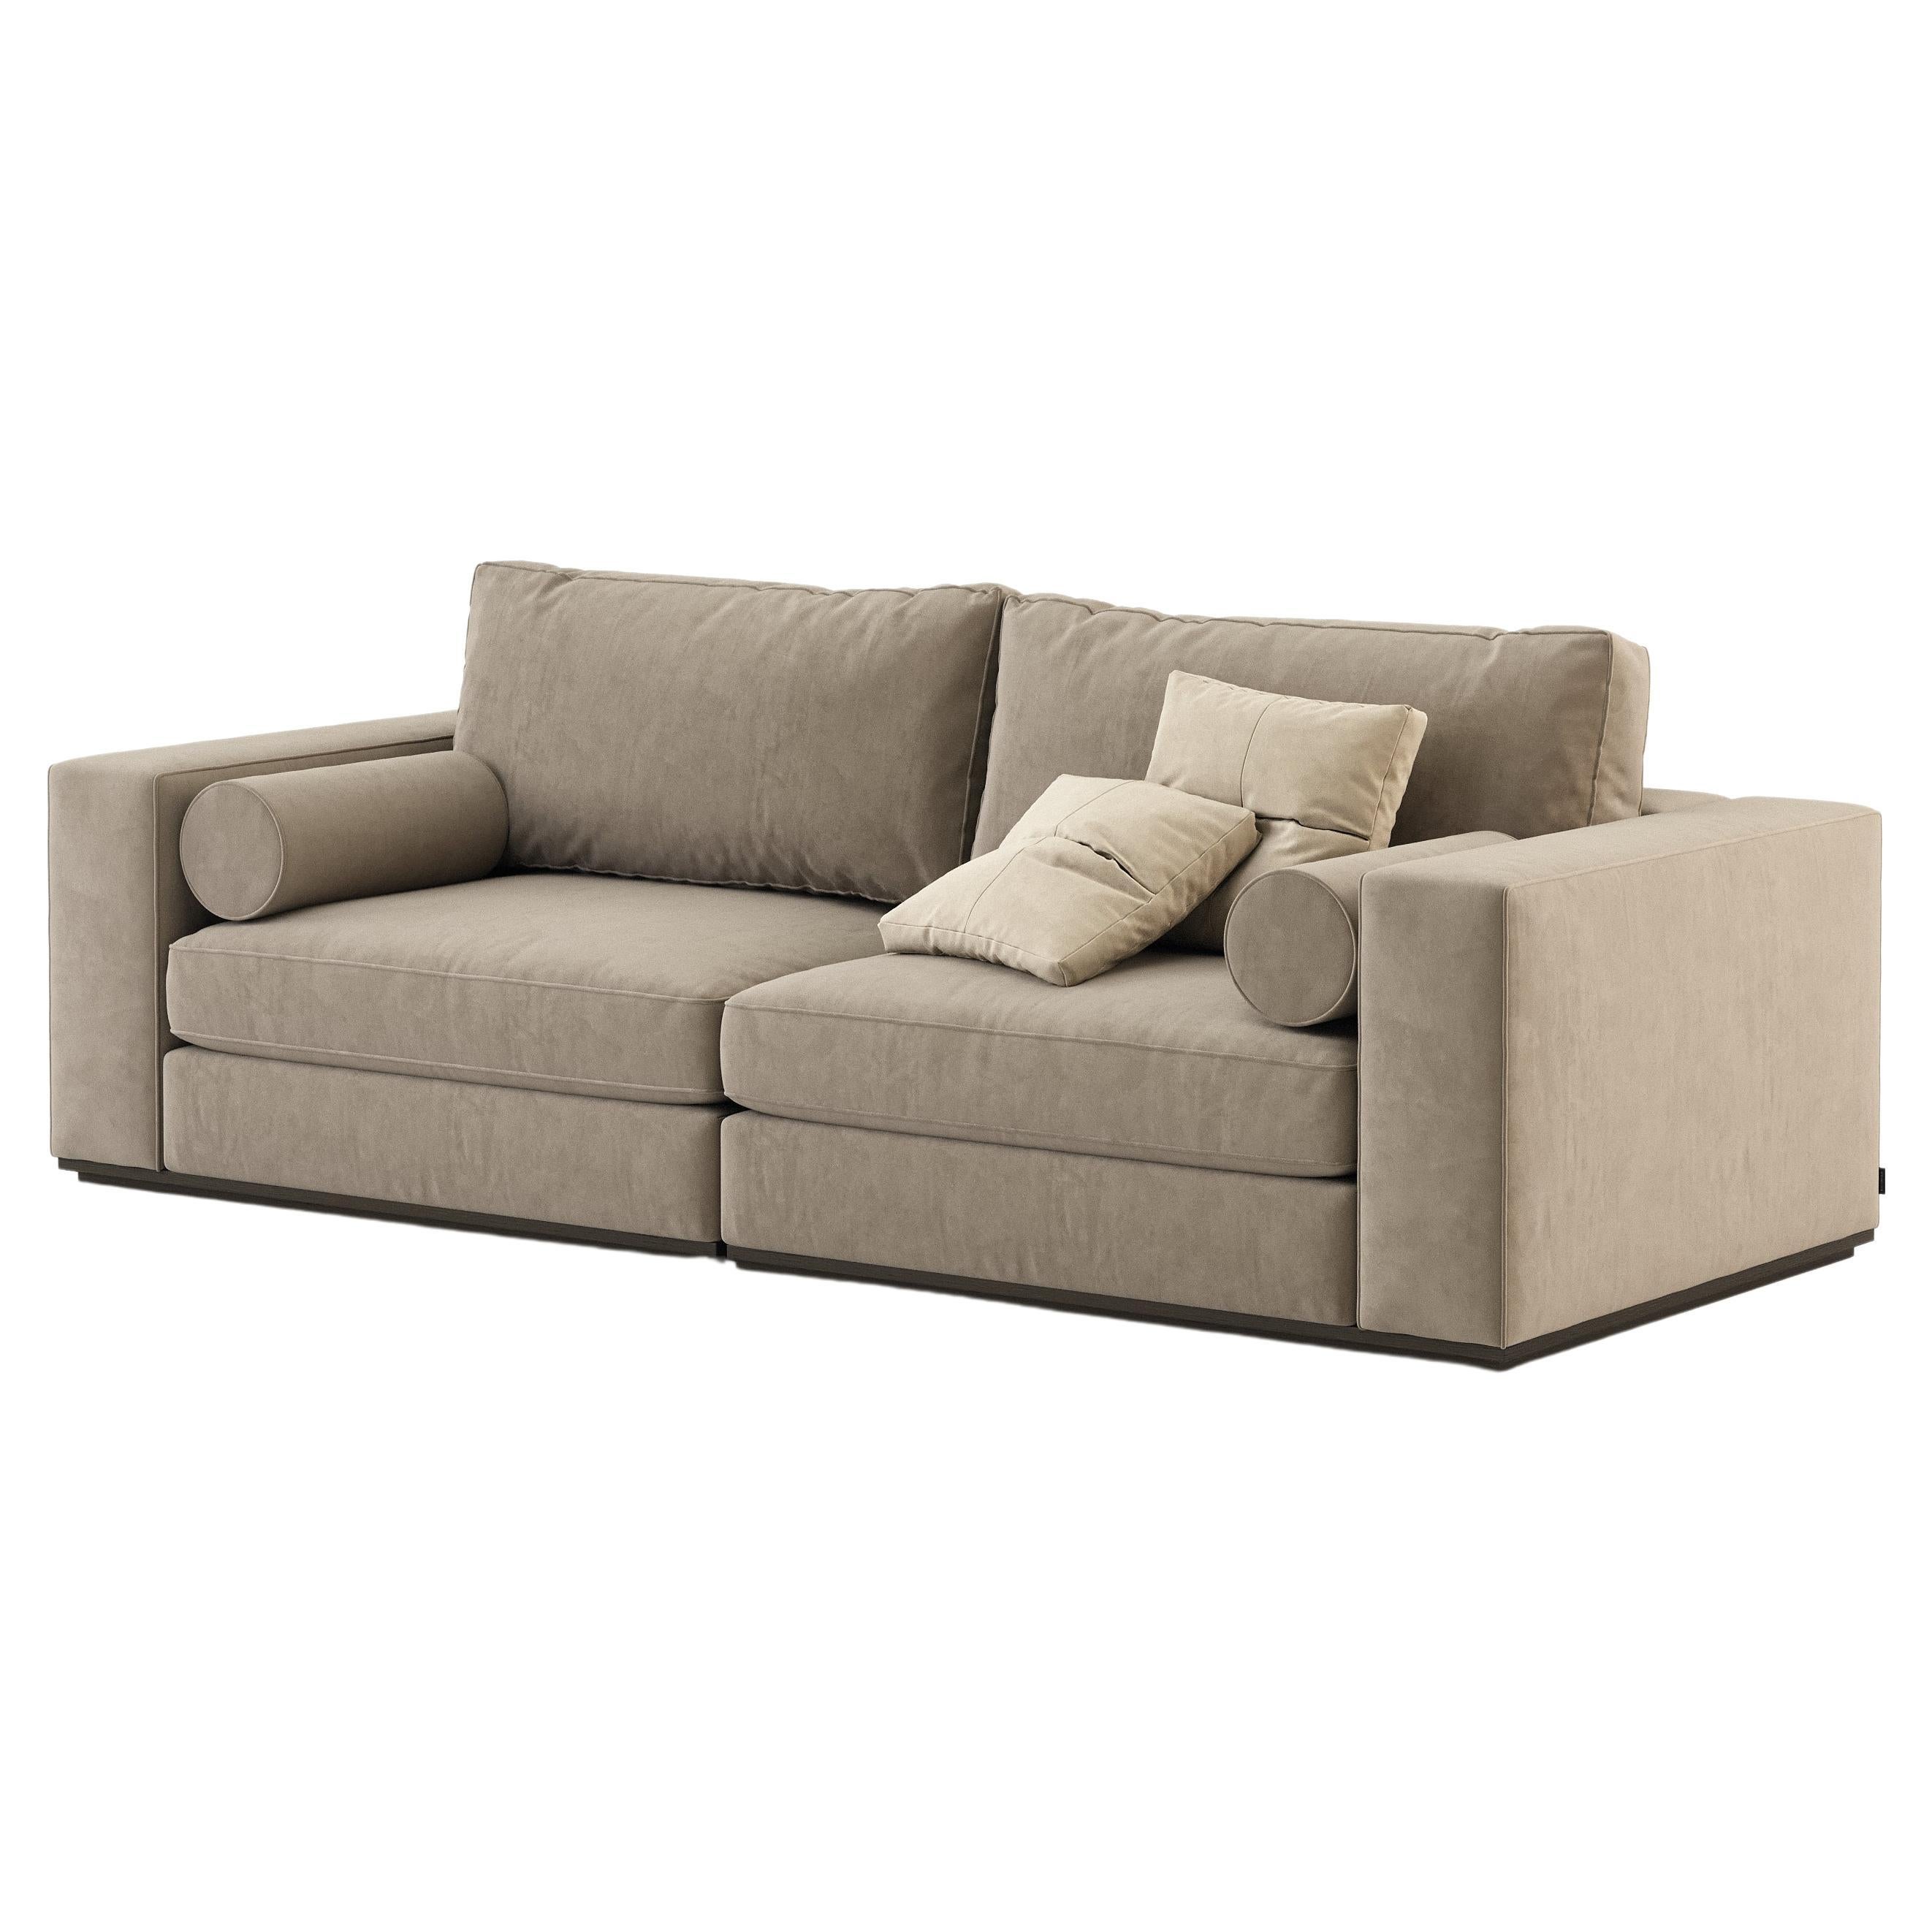 Modernes Fortune-Sofa mit 2 Sitzen aus Holz und Textilien, handgefertigt von Stylish Club